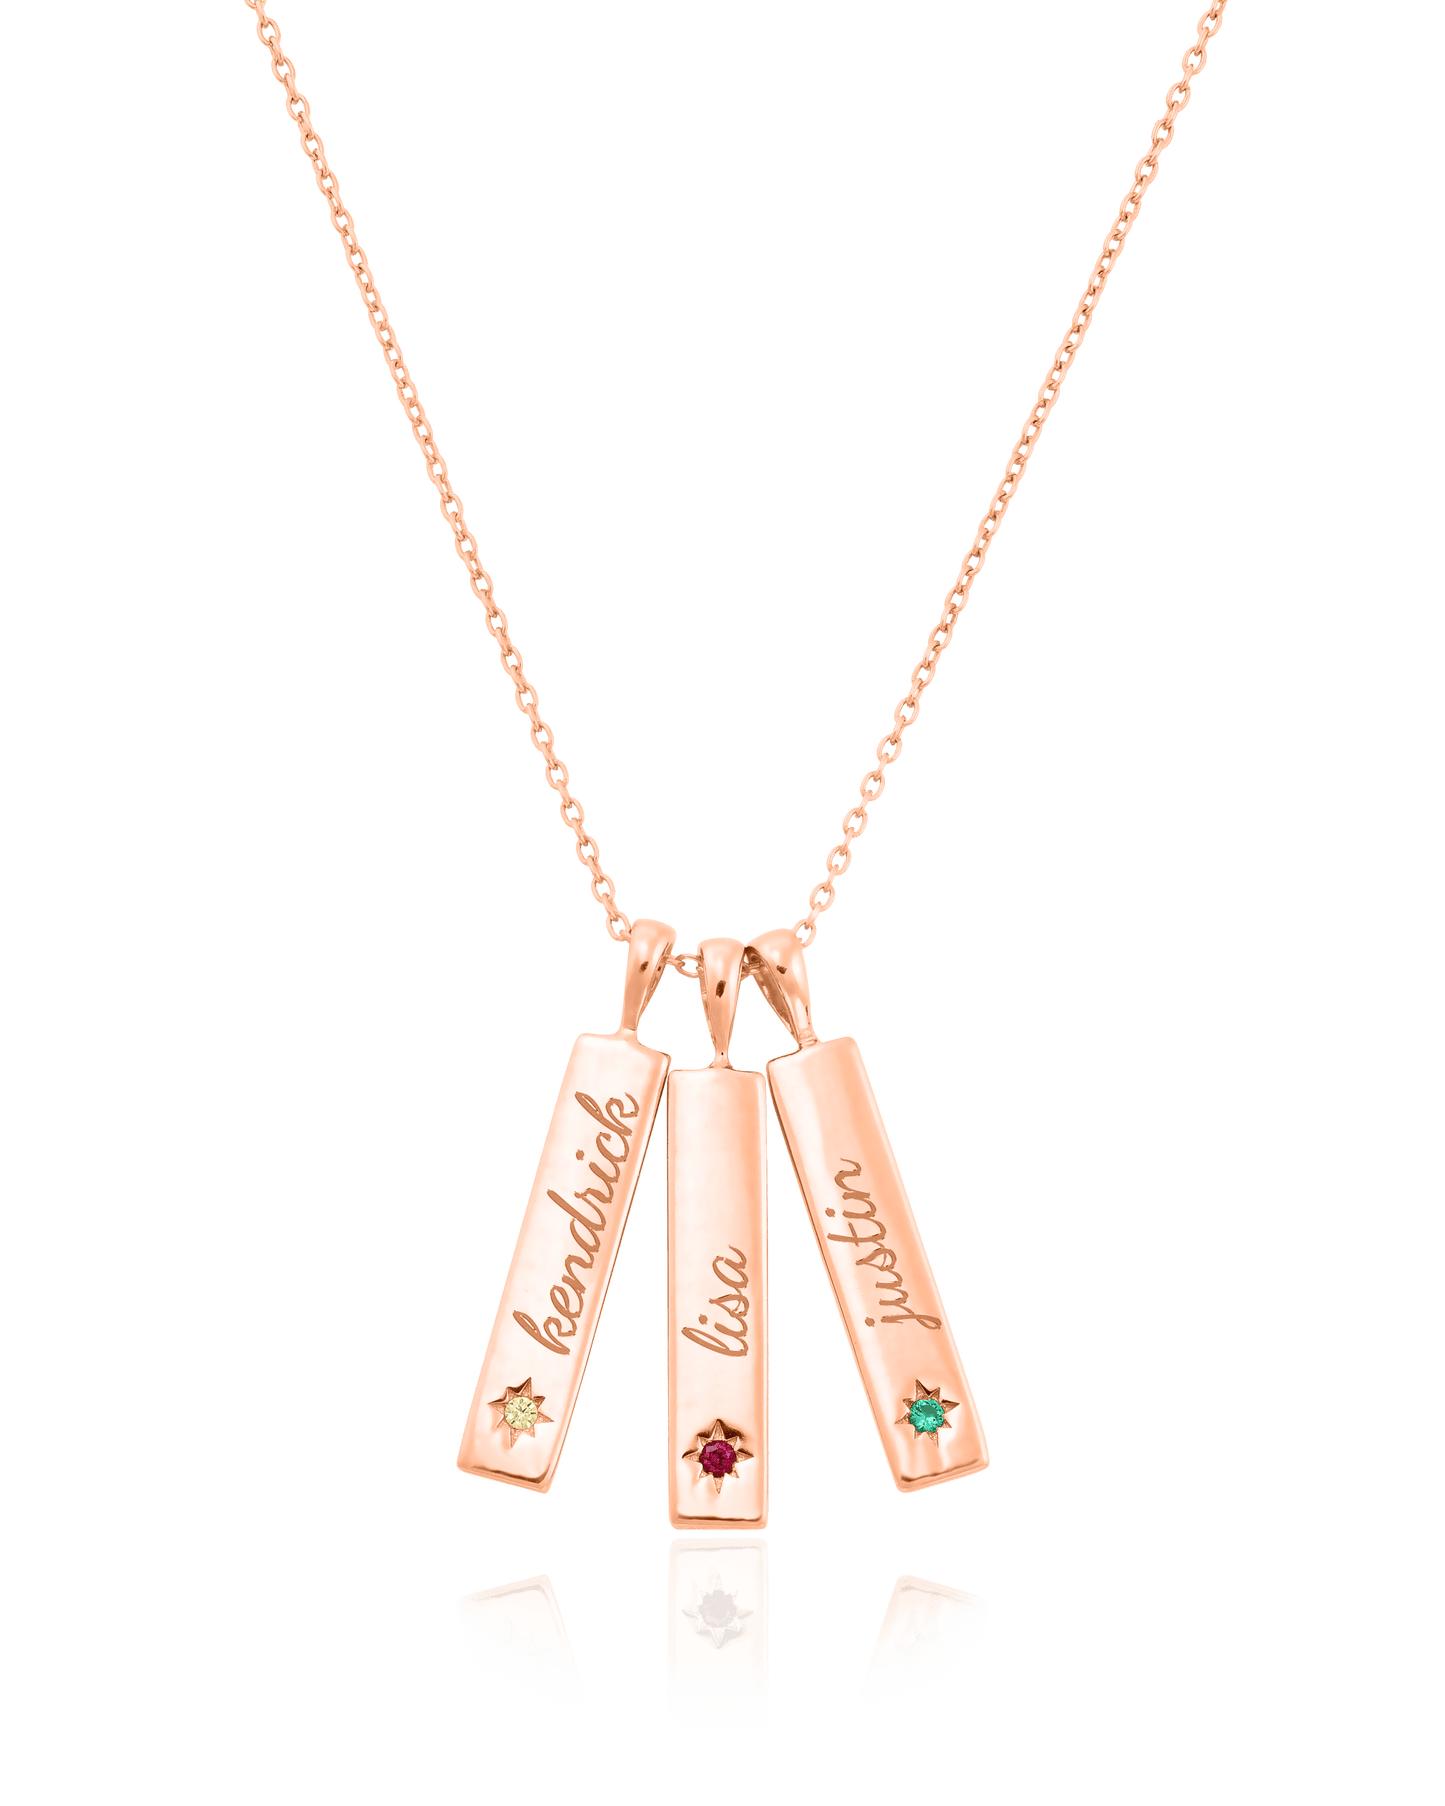 Birthstone Taglet Necklace - 18K Rose Vermeil Necklaces magal-dev 3 Bars 16”+2” extender 